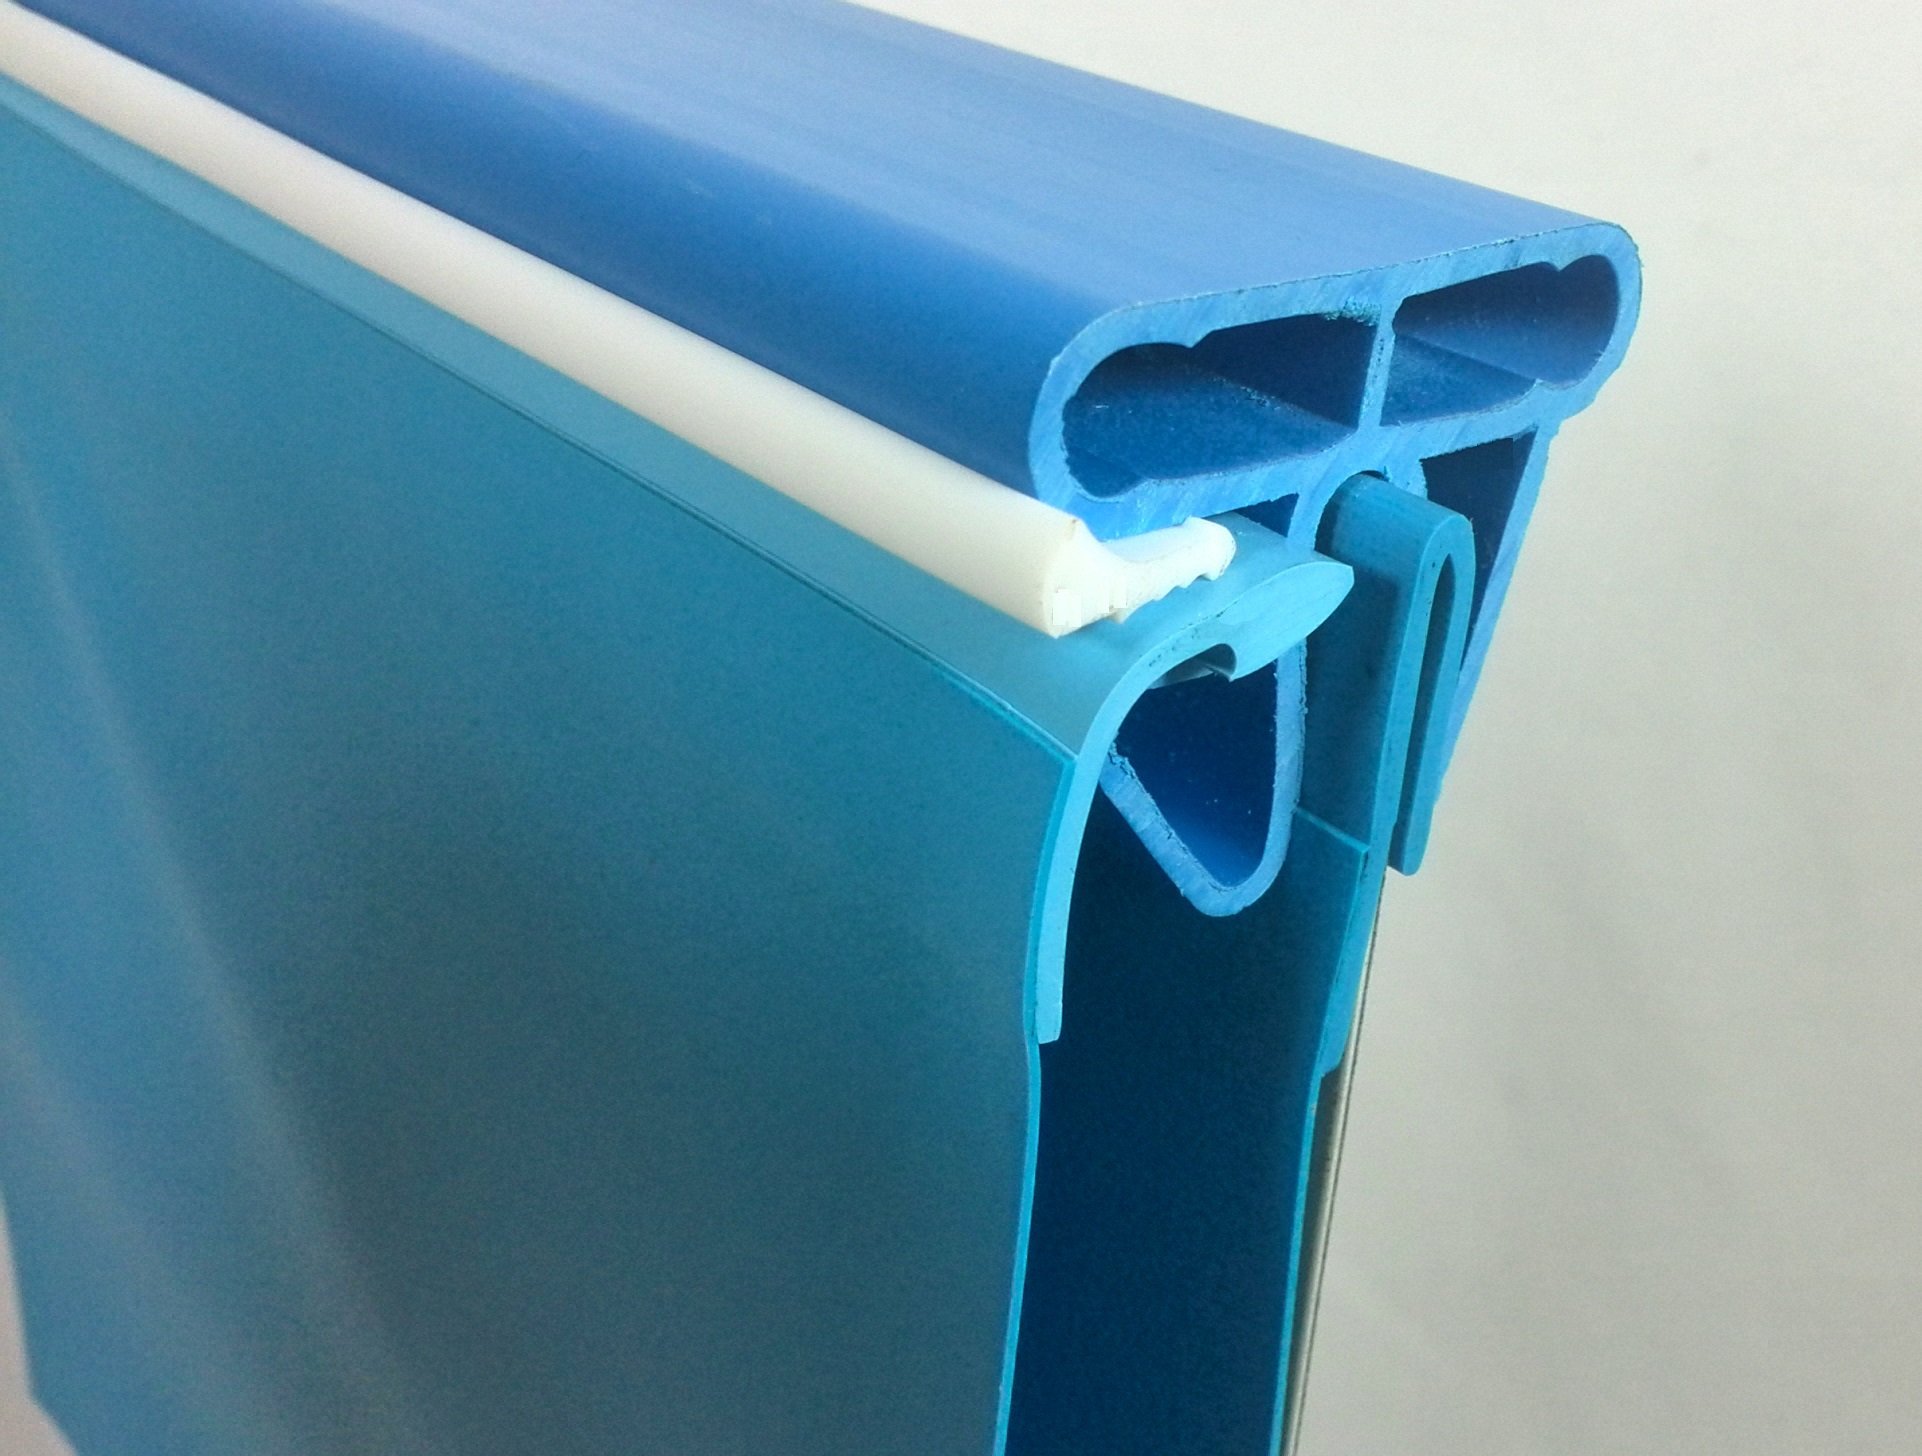 Stahlwandpool rund Exklusiv 500x150 cm, Stahl 0,8 mm weiß, Folie 0,6 mm blau, Einhängebiese